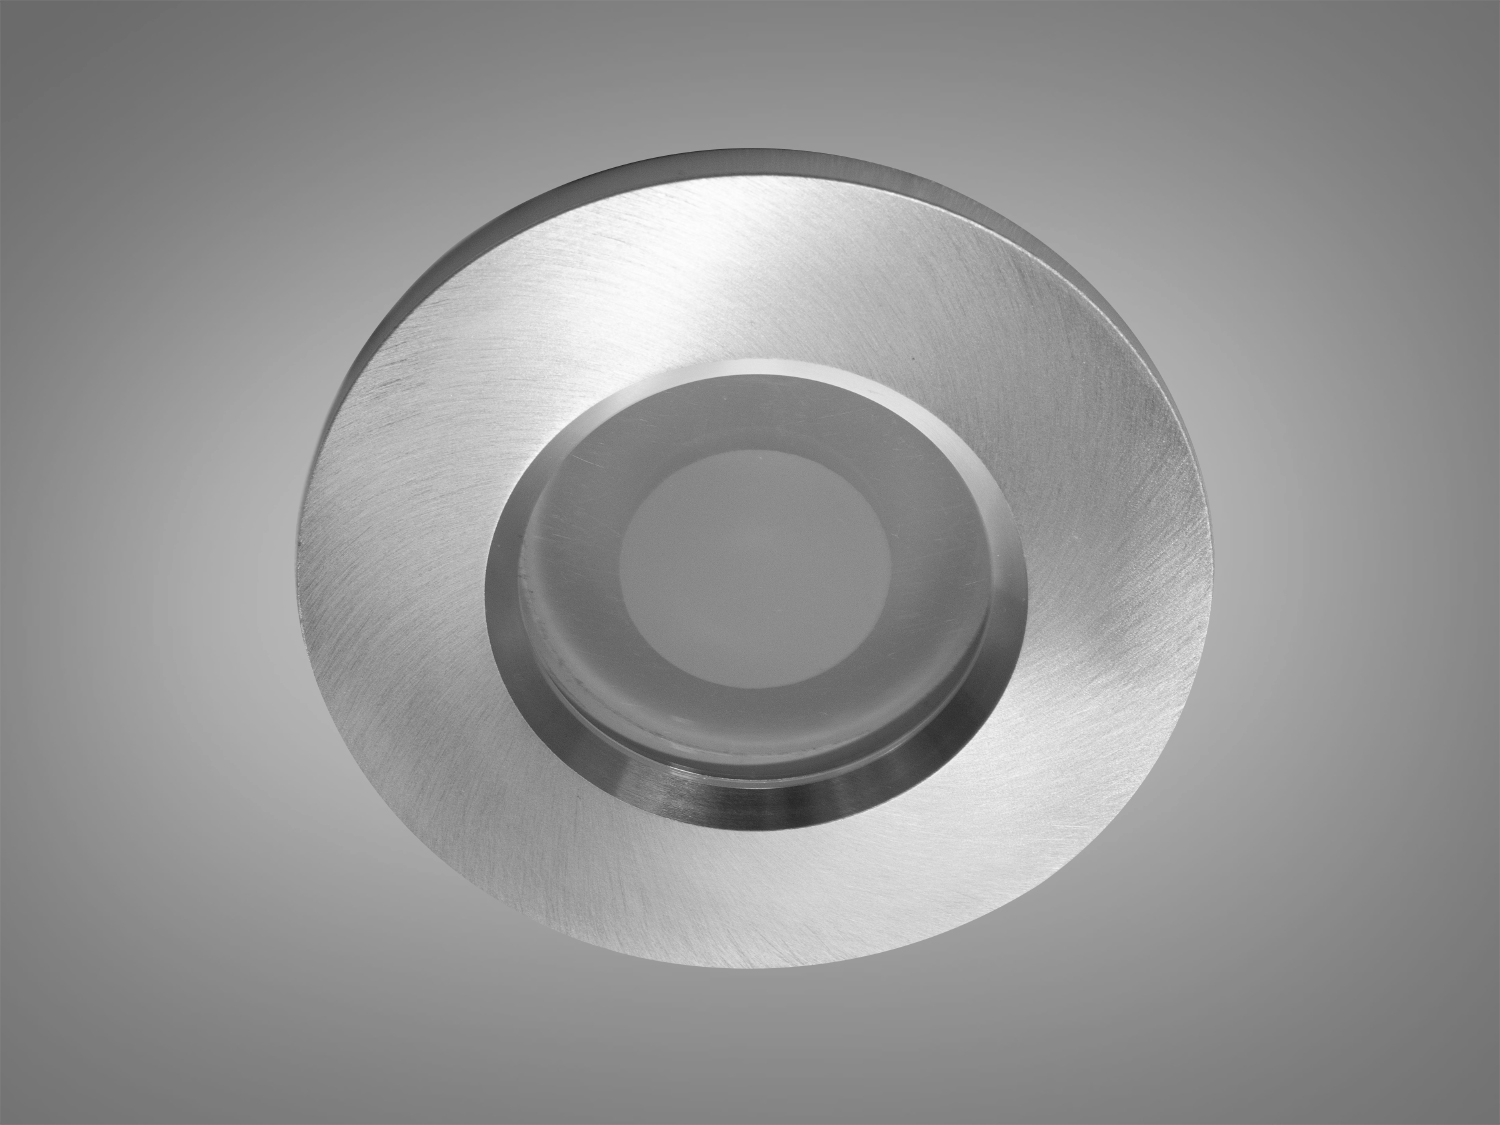 Цей точковий світильник виготовлений з алюмінію представляє собою втілення стилю та функціональності, які пропонує нова серія від ТМ 